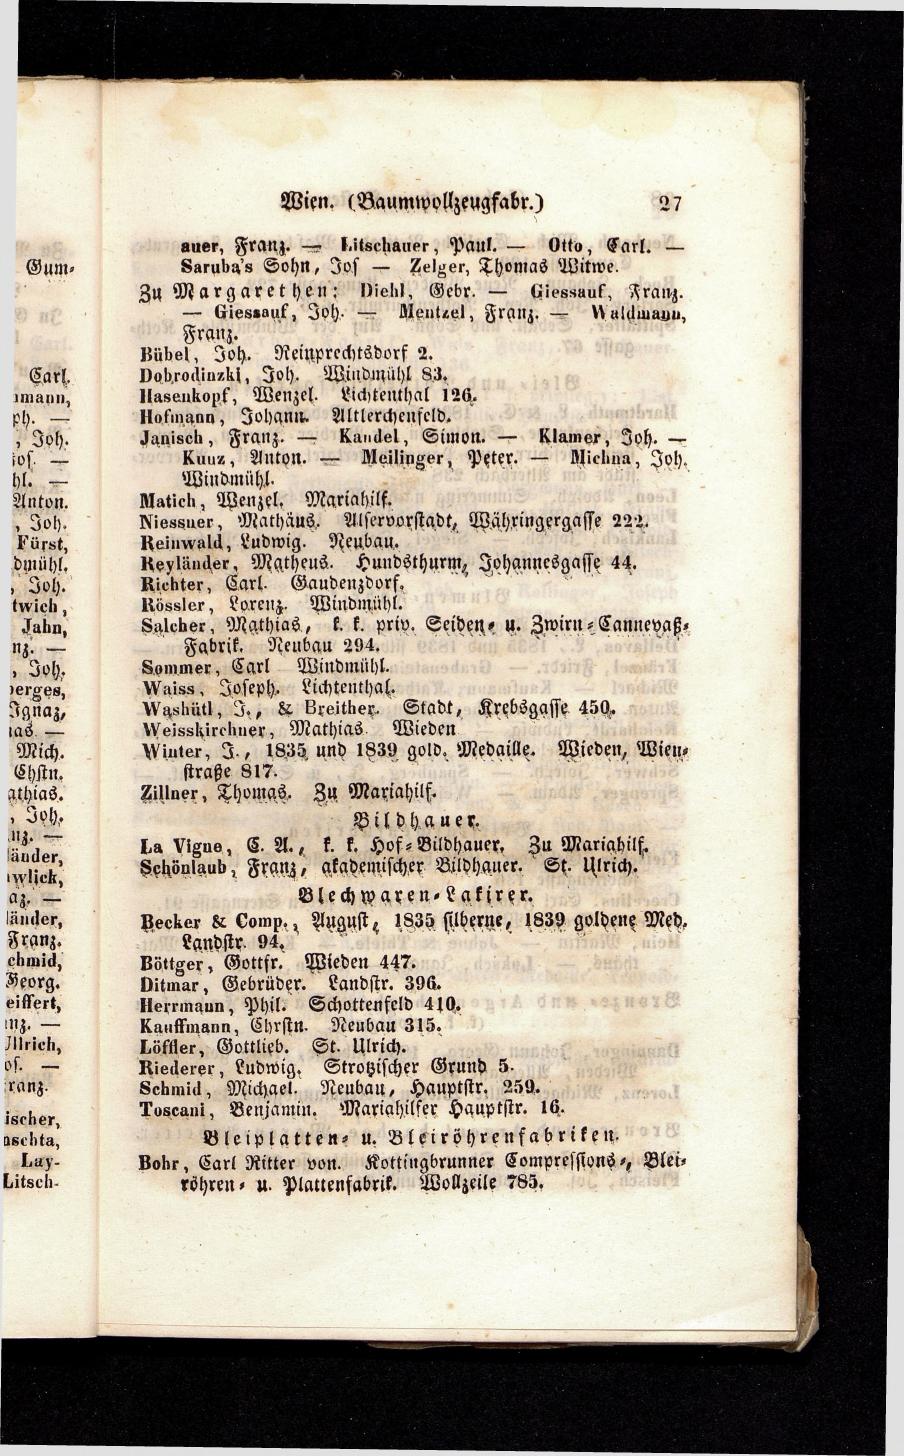 Grosses Adressbuch der Kaufleute. No. 13. Oesterreich ober u. unter der Enns 1844 - Seite 31